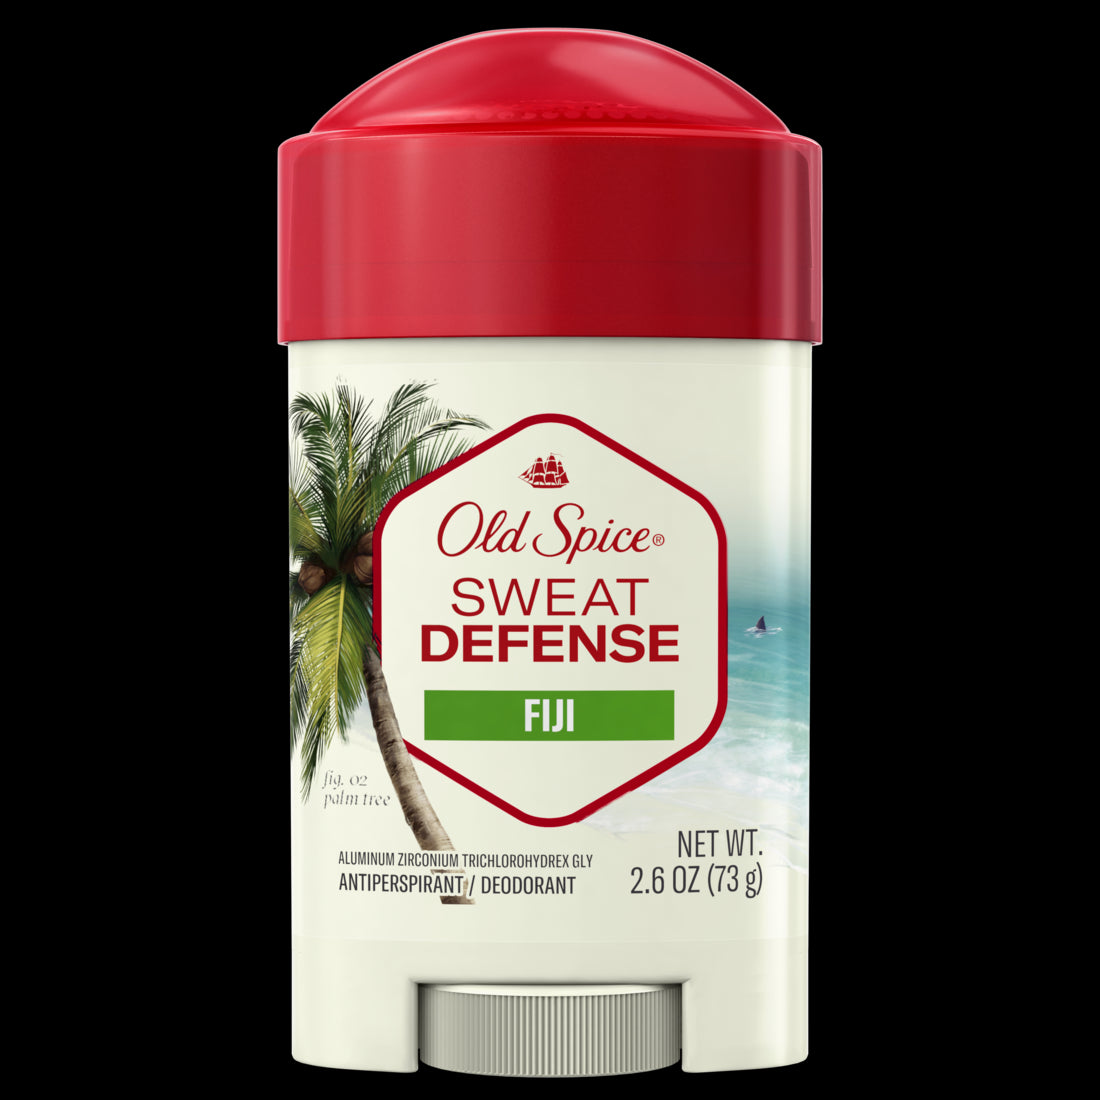 Old Spice Men's Antiperspirant & Deodorant Sweat Defense Fiji - 2.6oz/12pk